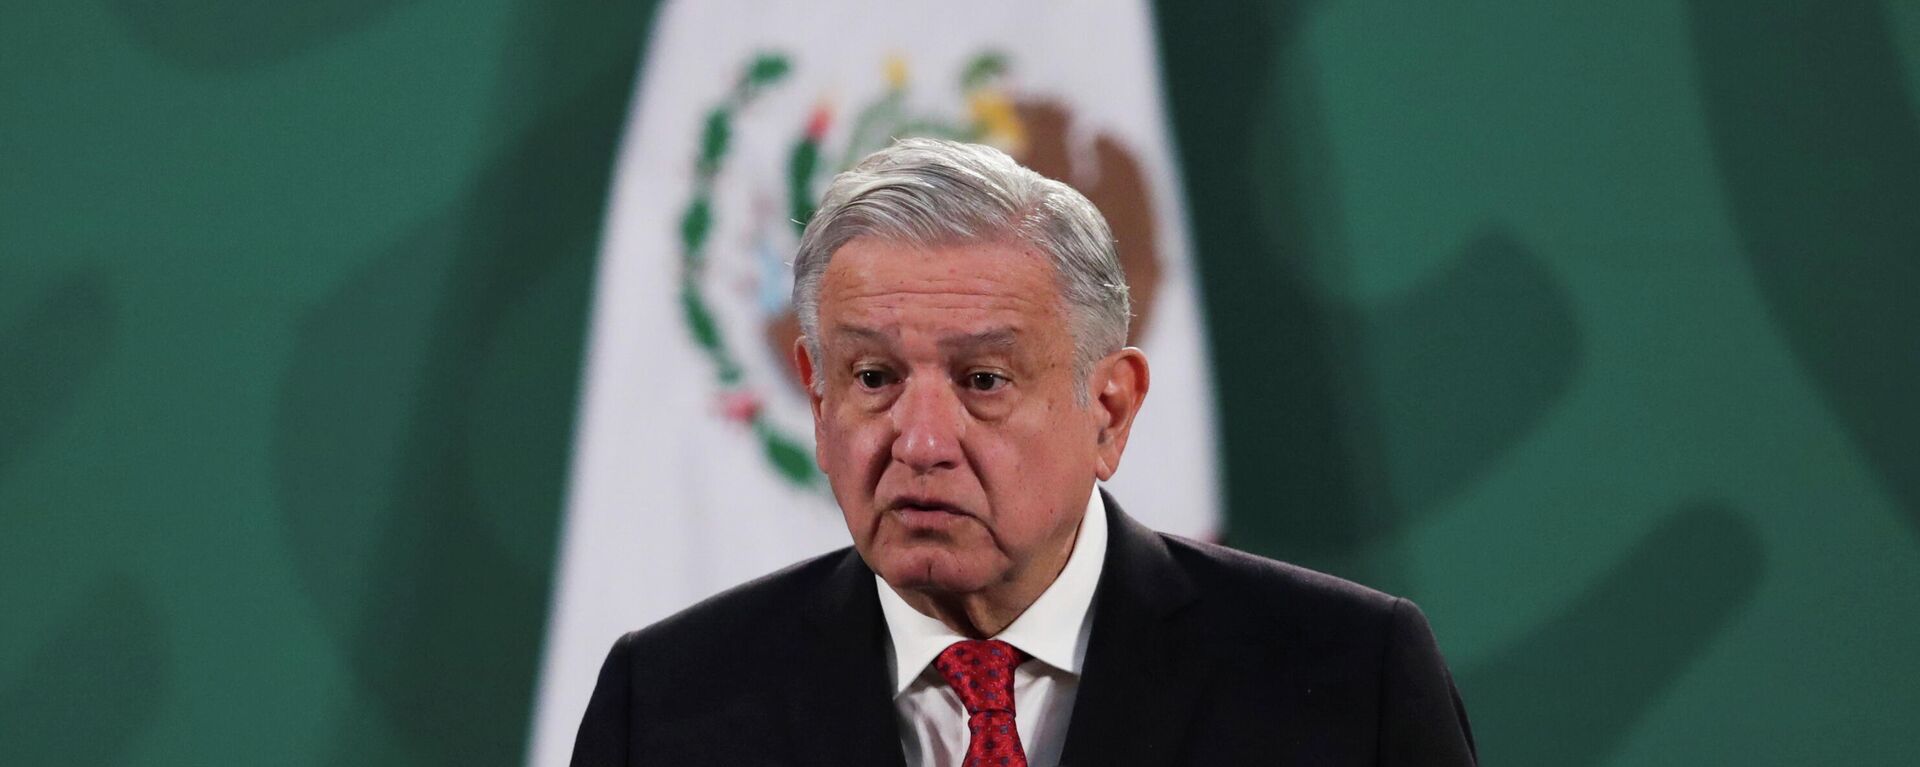 Andrés Manuel López Obrador, presidente de México - Sputnik Mundo, 1920, 15.03.2021